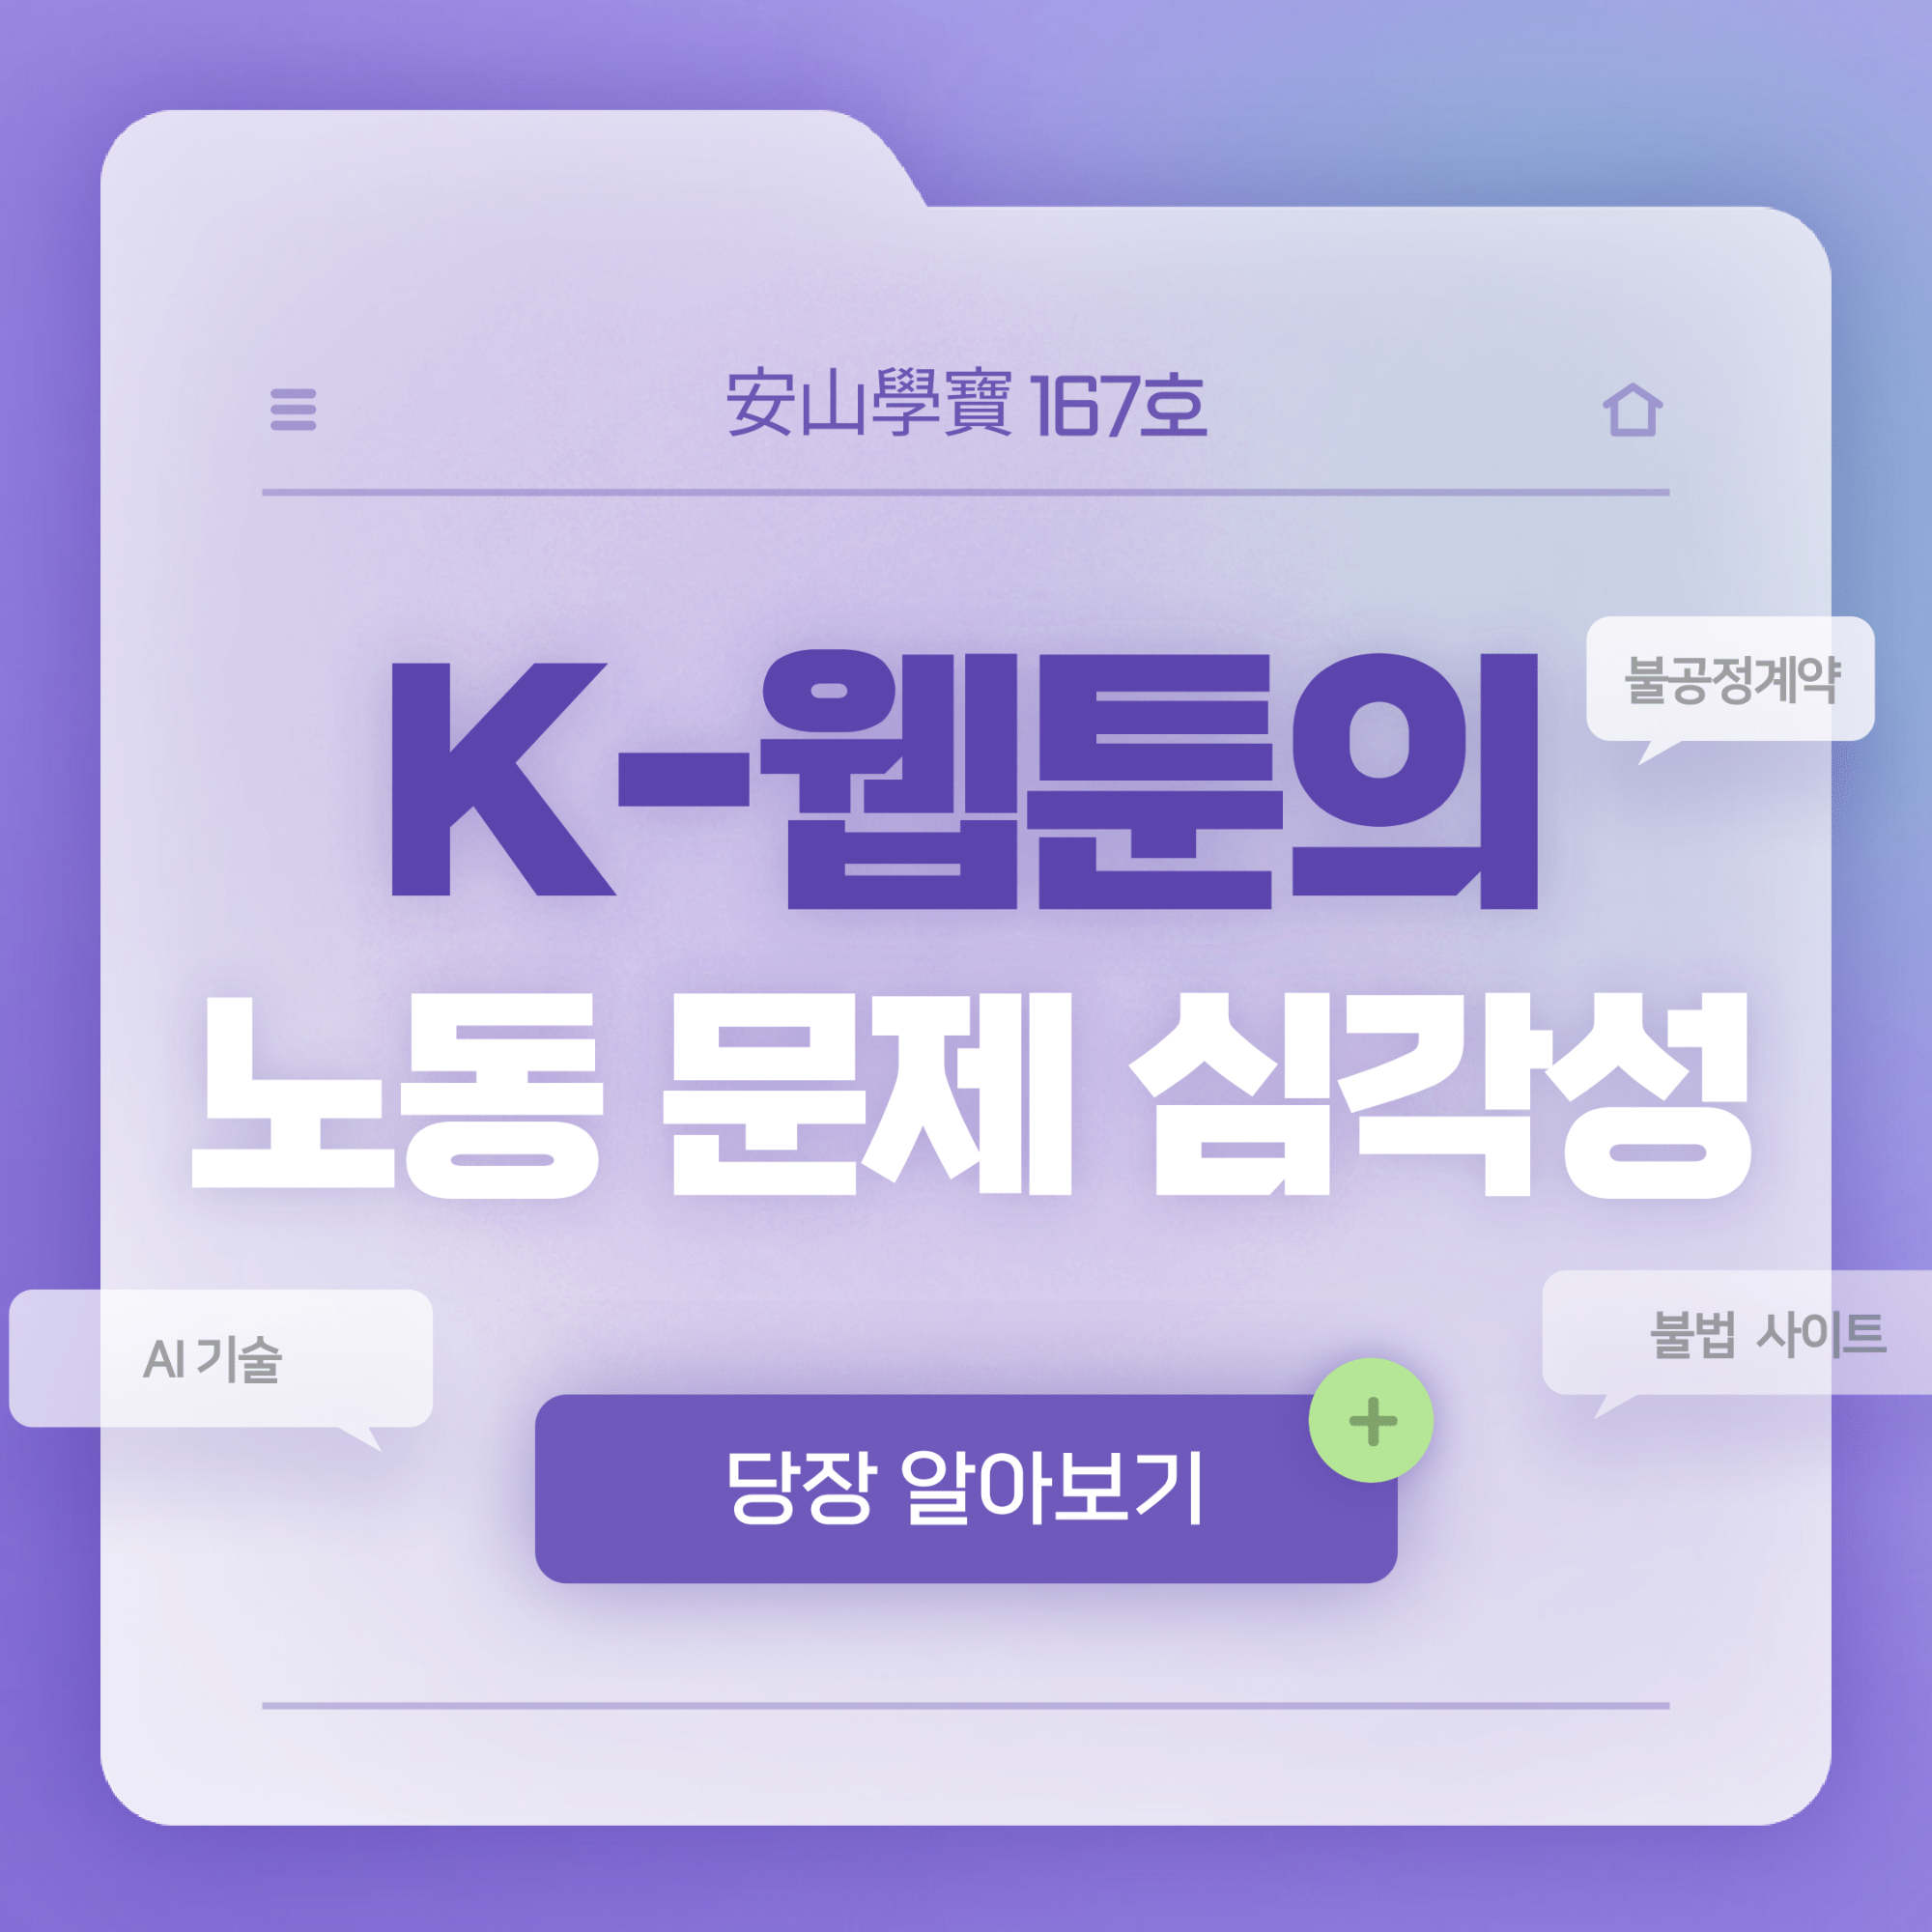 167호 K-웹툰의 노동 문제 심각성-1.png